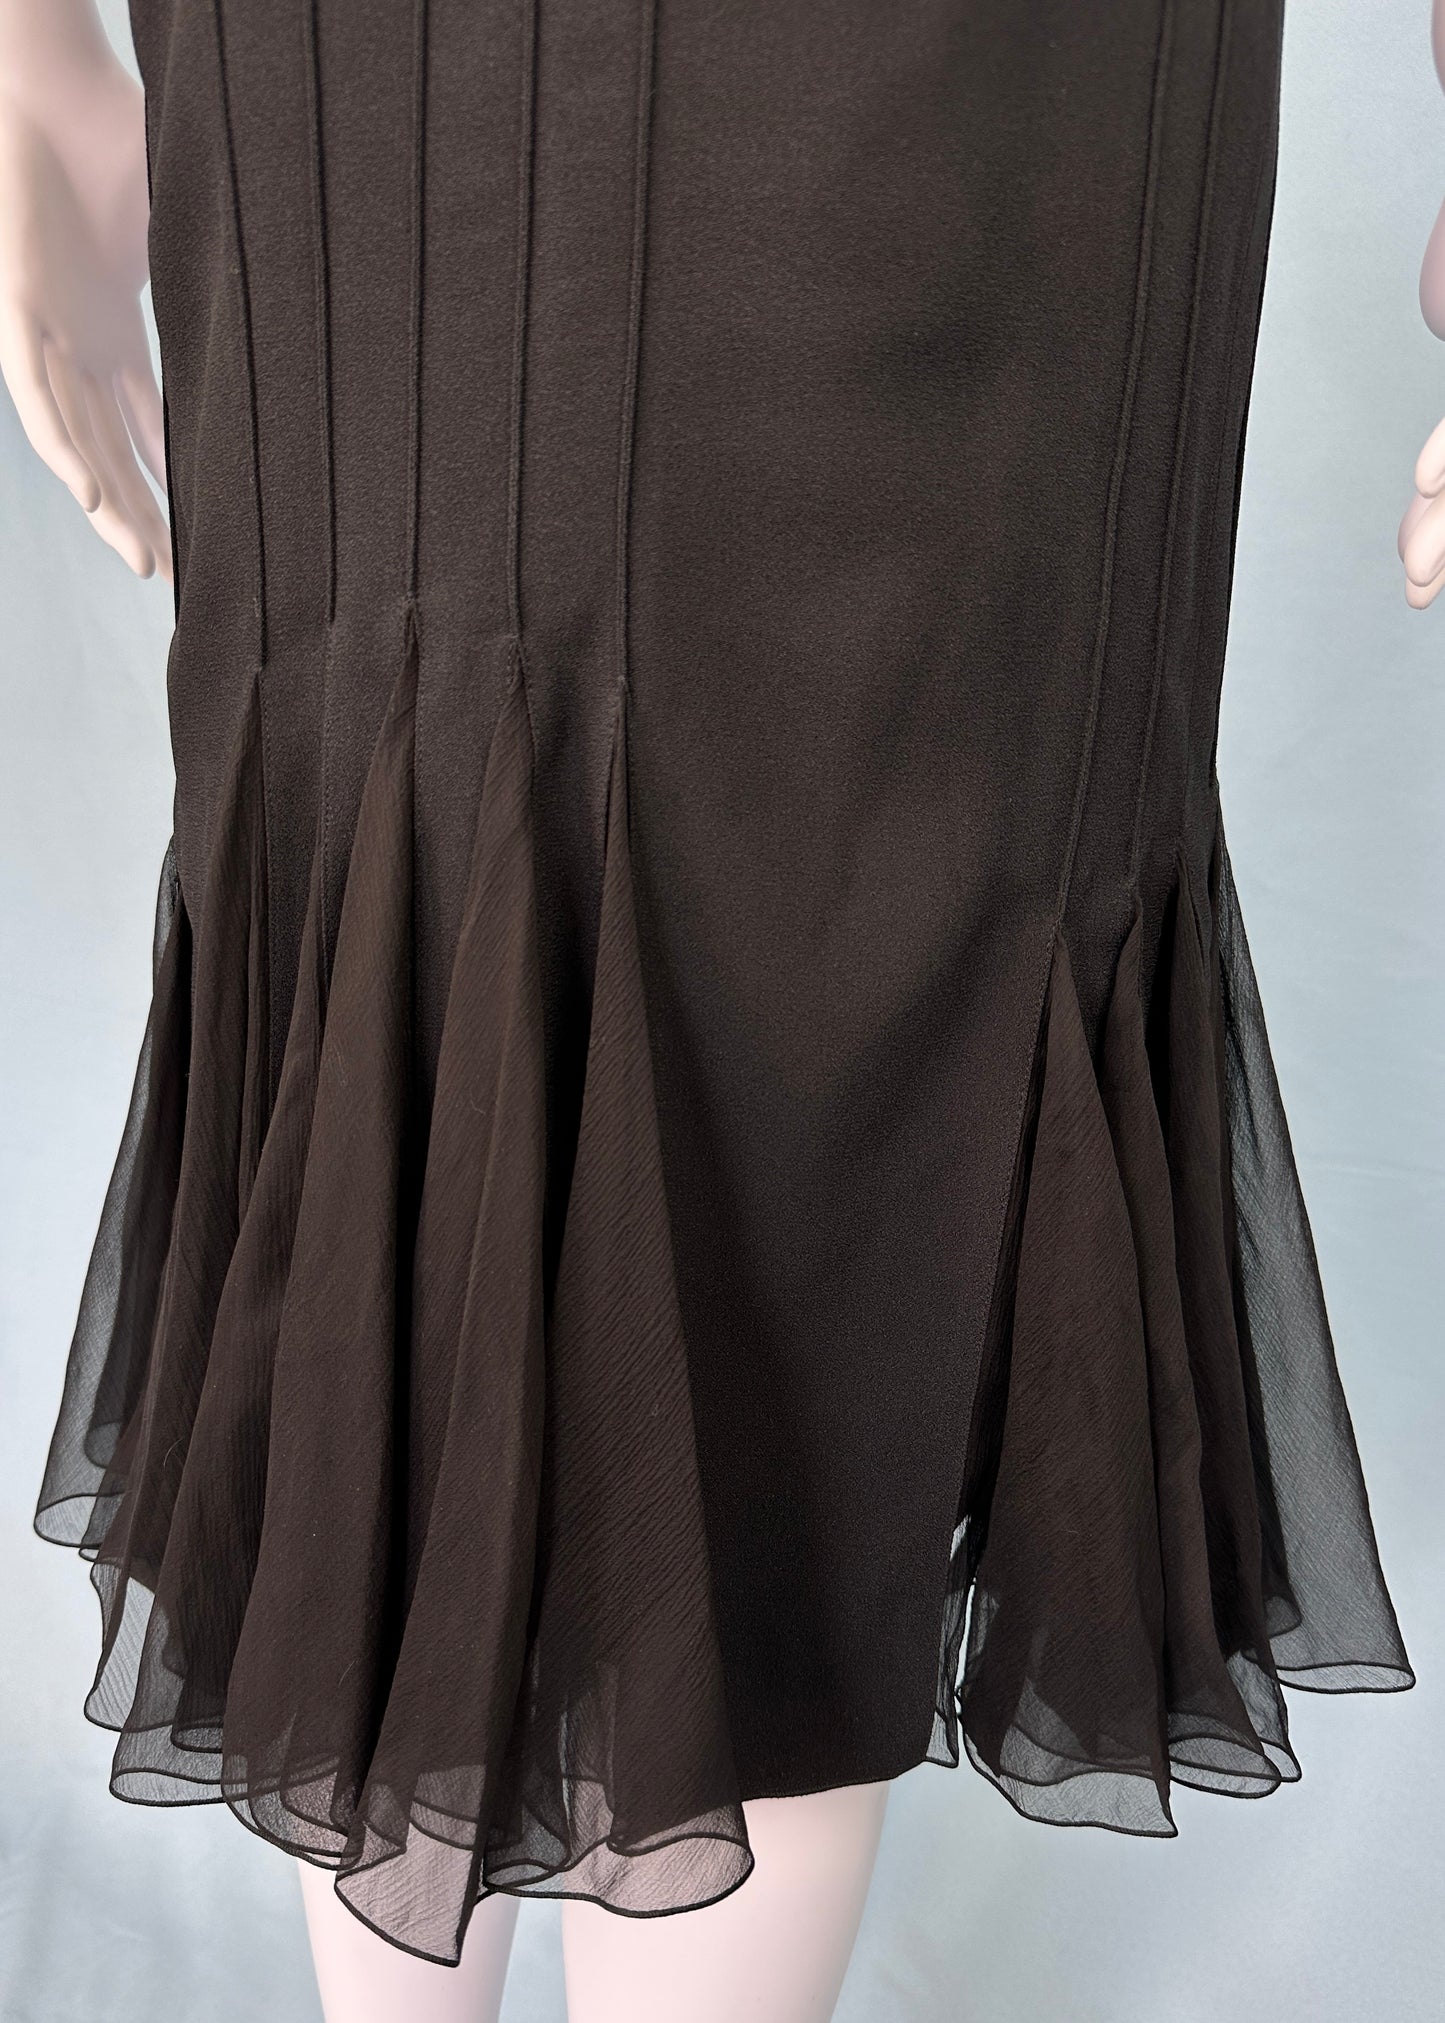 Dior Spring 2008 Black Silk Chiffon Bow Dress